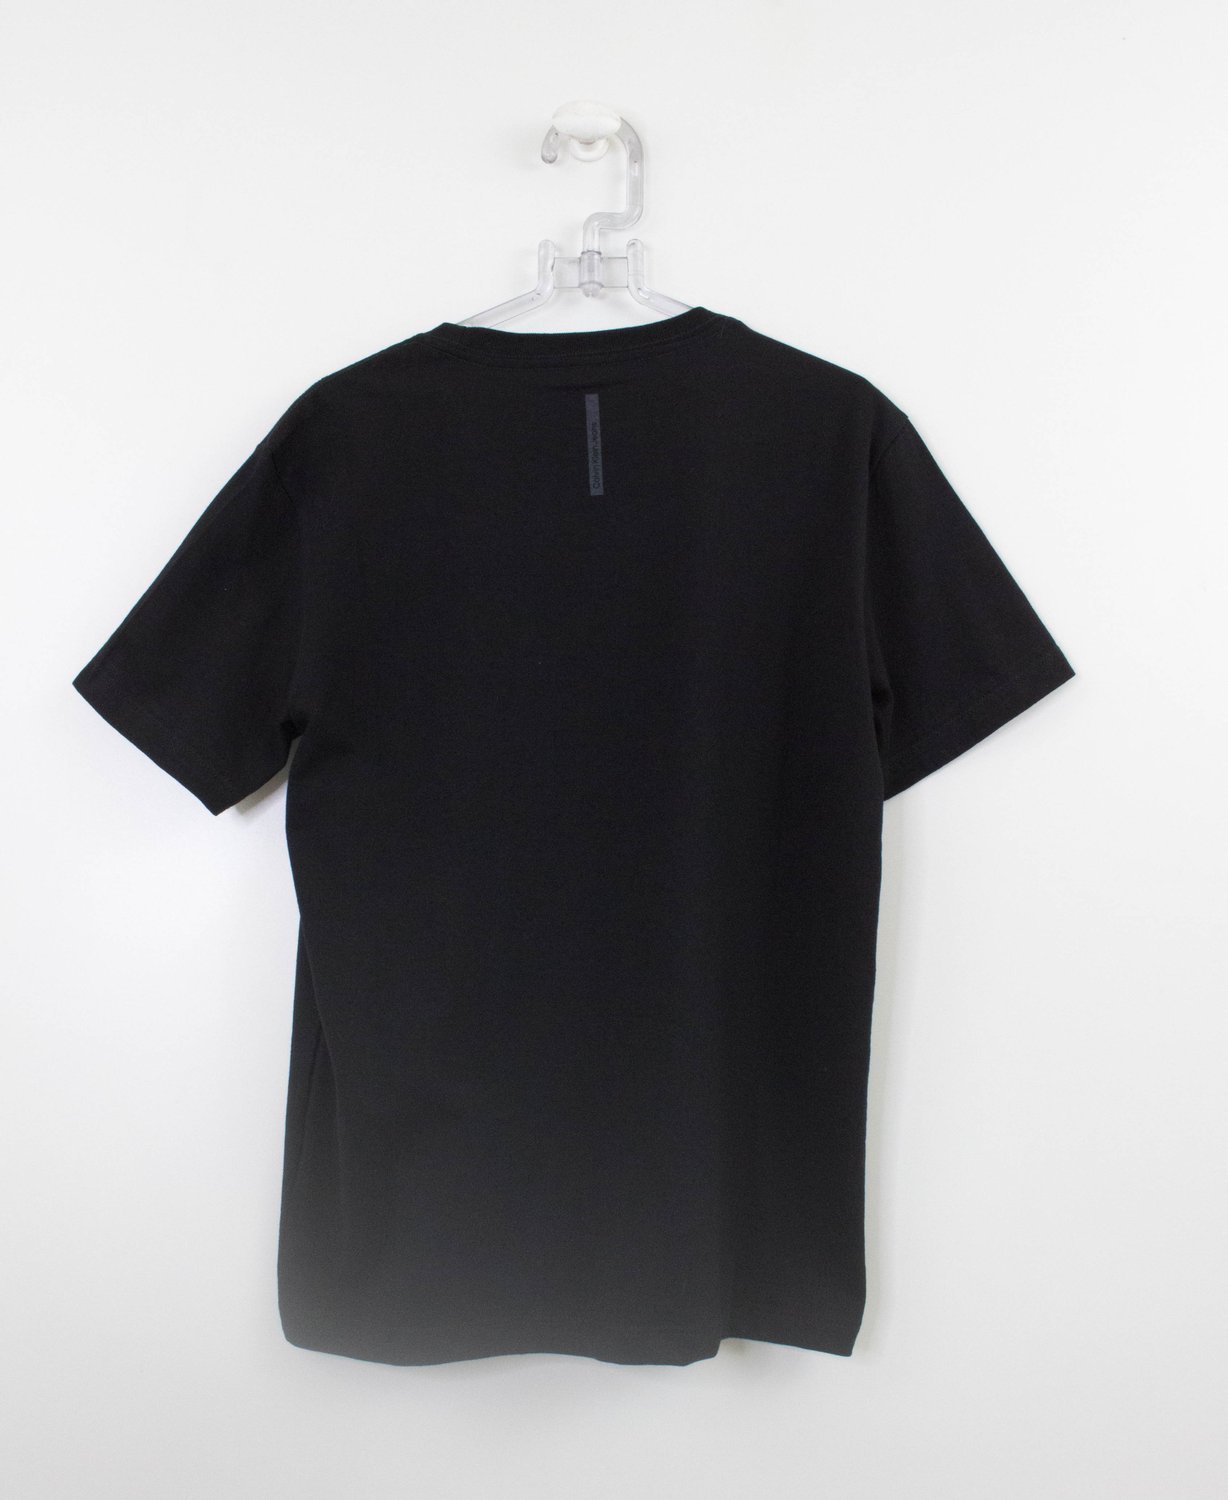 Camiseta negra con logo de Calvin Klein Jeans